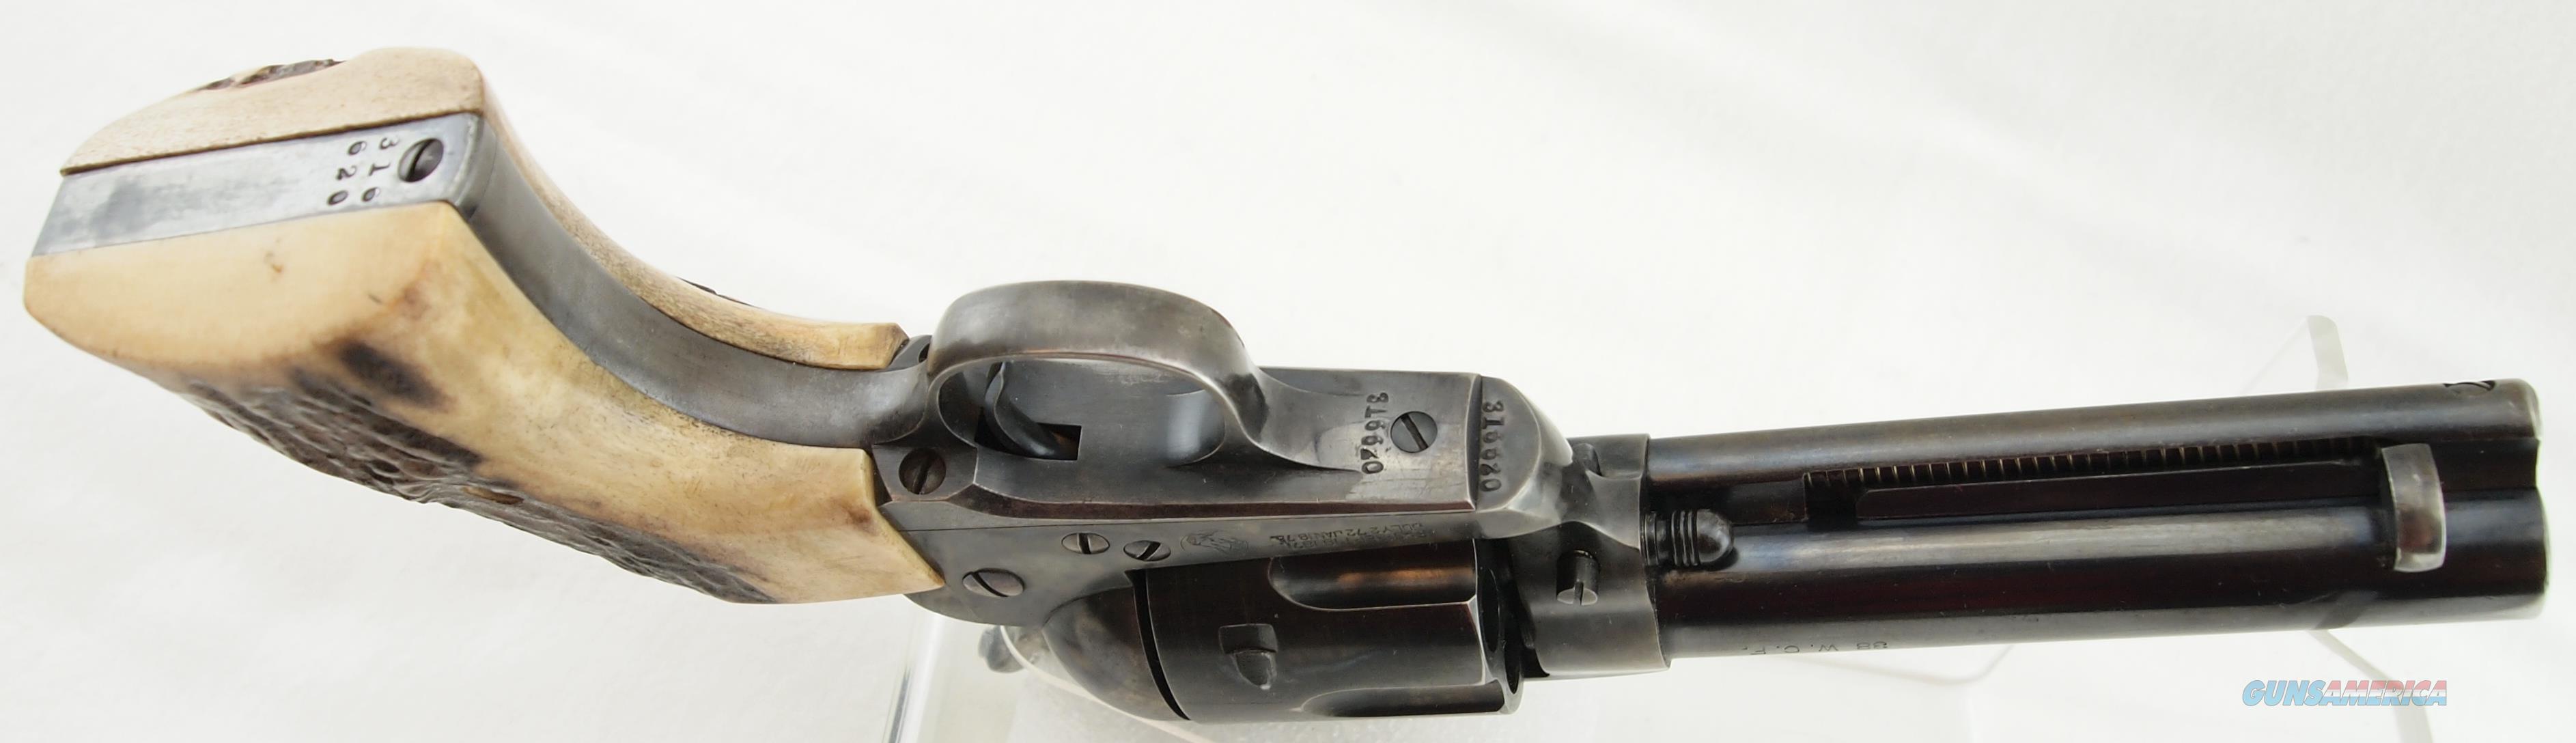 Colt 1873 Saa 1st Gen Mfg 1911 For Sale At 931135306